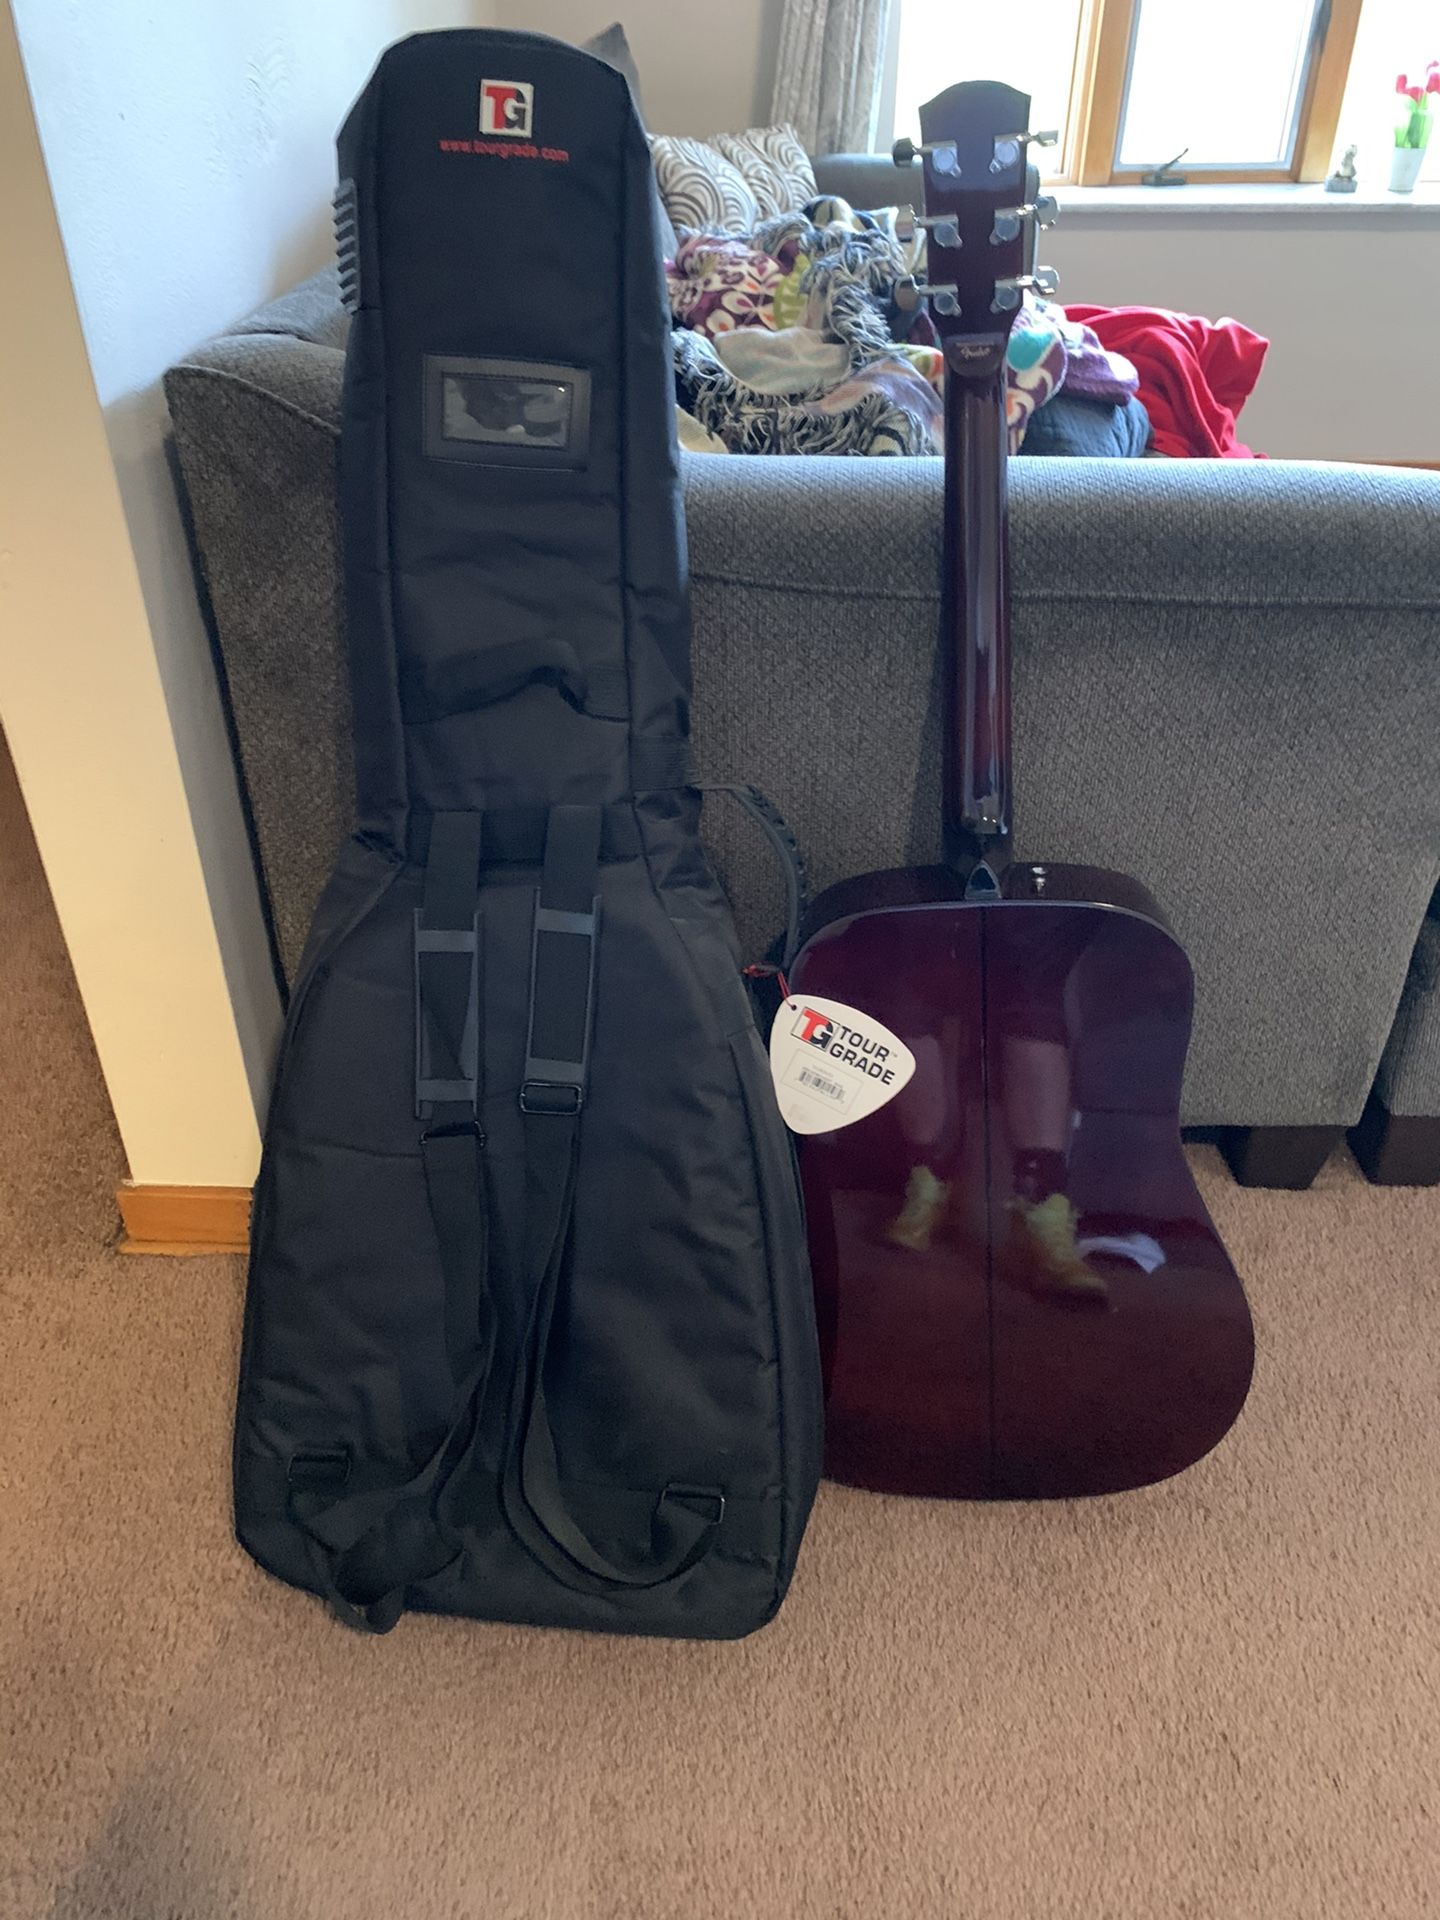 Guitar and Guitar Bag